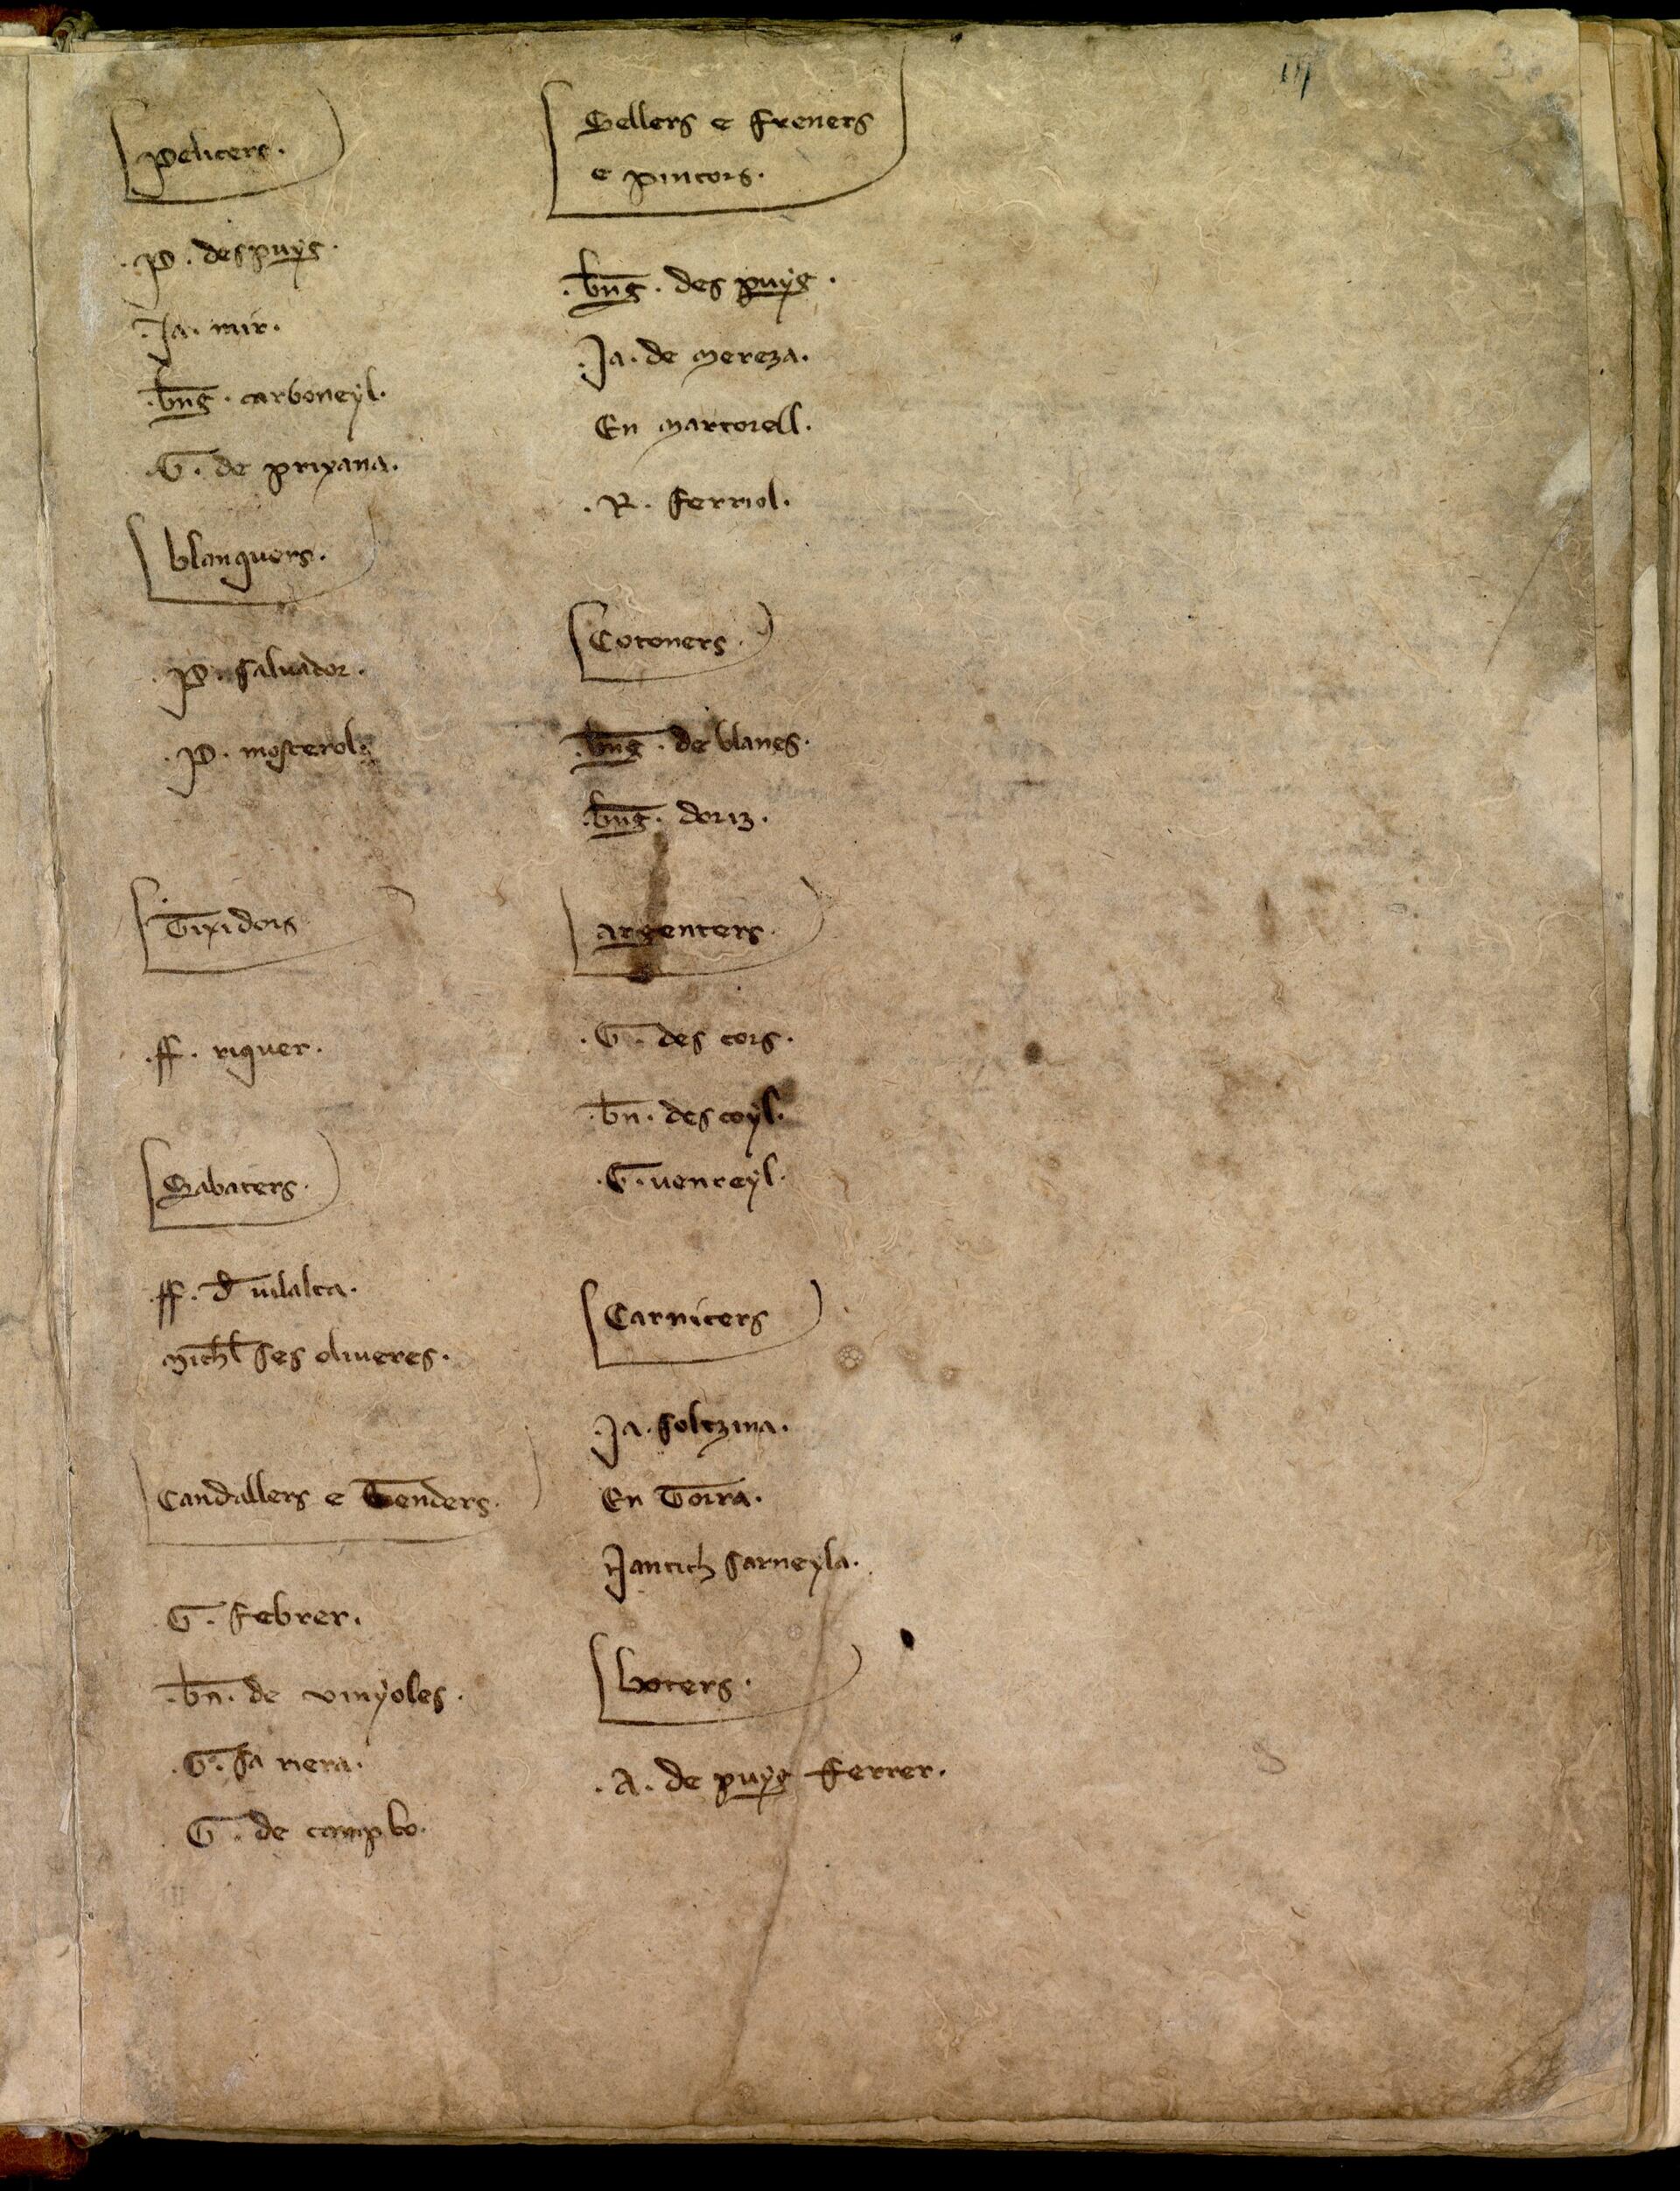 El 1301 G. Des Cors, Bernat des Coll i G. Vencell eren representants dels argenters al Consell de Cent. Llibre del consell 1B.I-01 fol.3 r. 